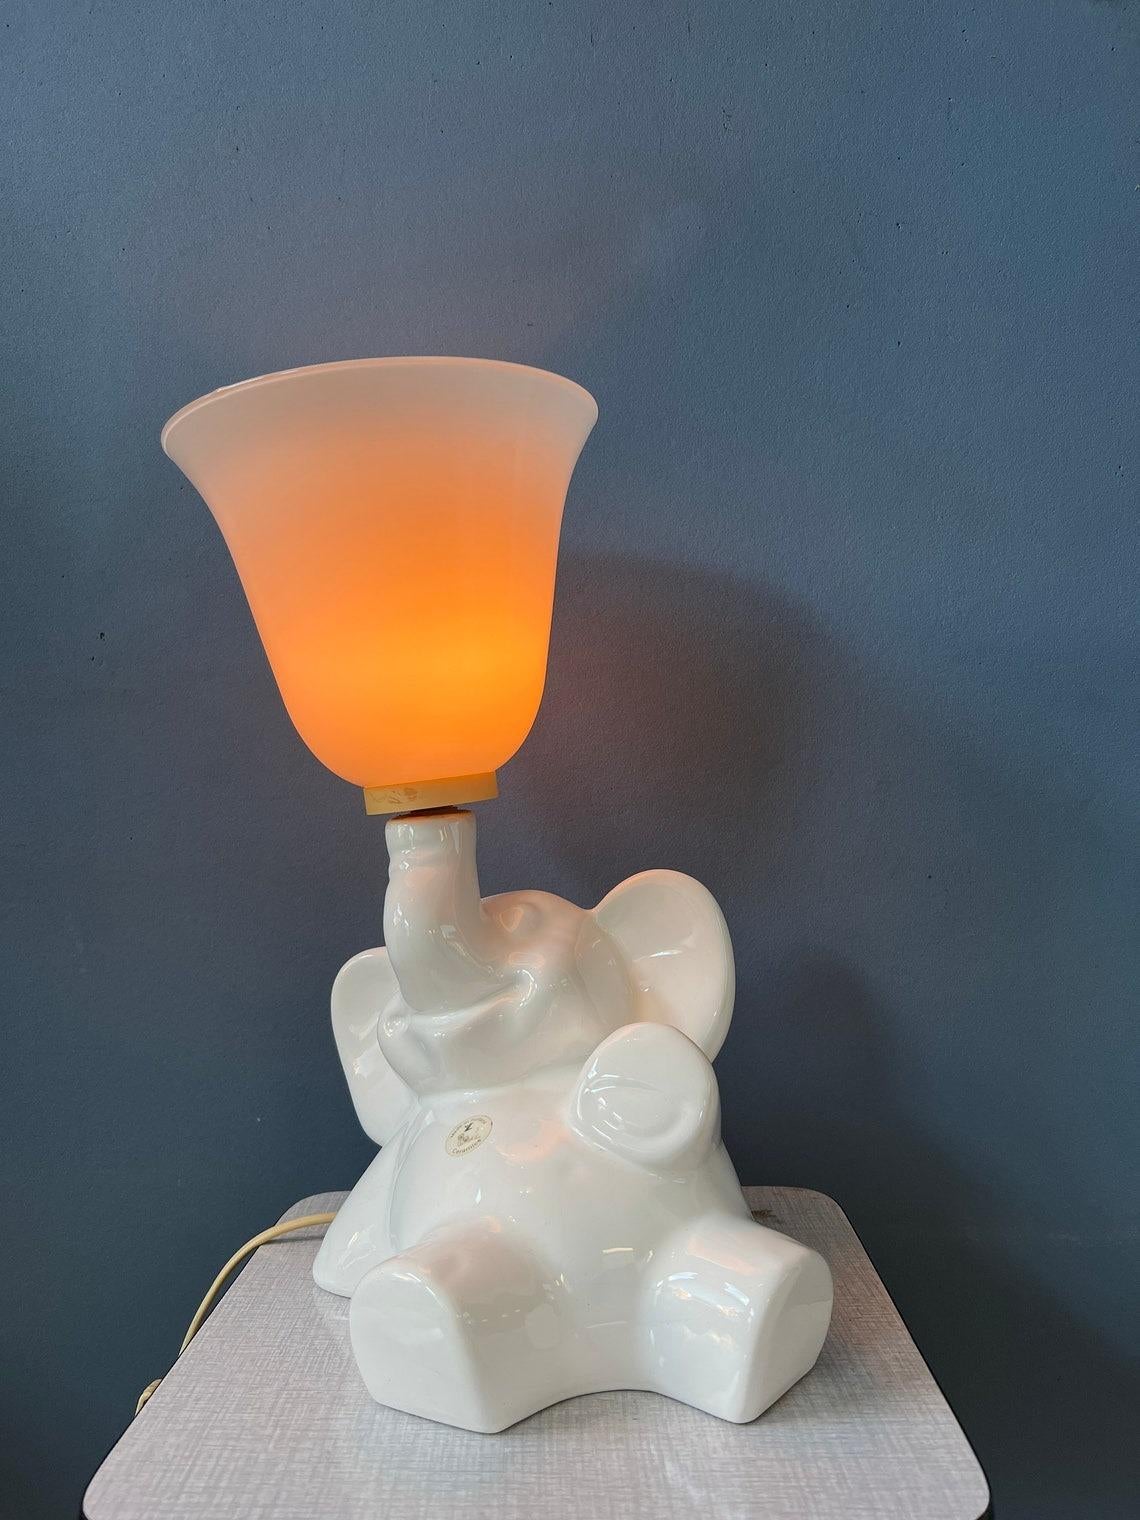 Rare lampe éléphant en porcelaine avec un abat-jour en verre. L'abat-jour en forme de corne peut être fixé à l'éléphant de porcelaine séparément. La lampe nécessite une ampoule E27 et dispose actuellement d'une fiche de connexion à